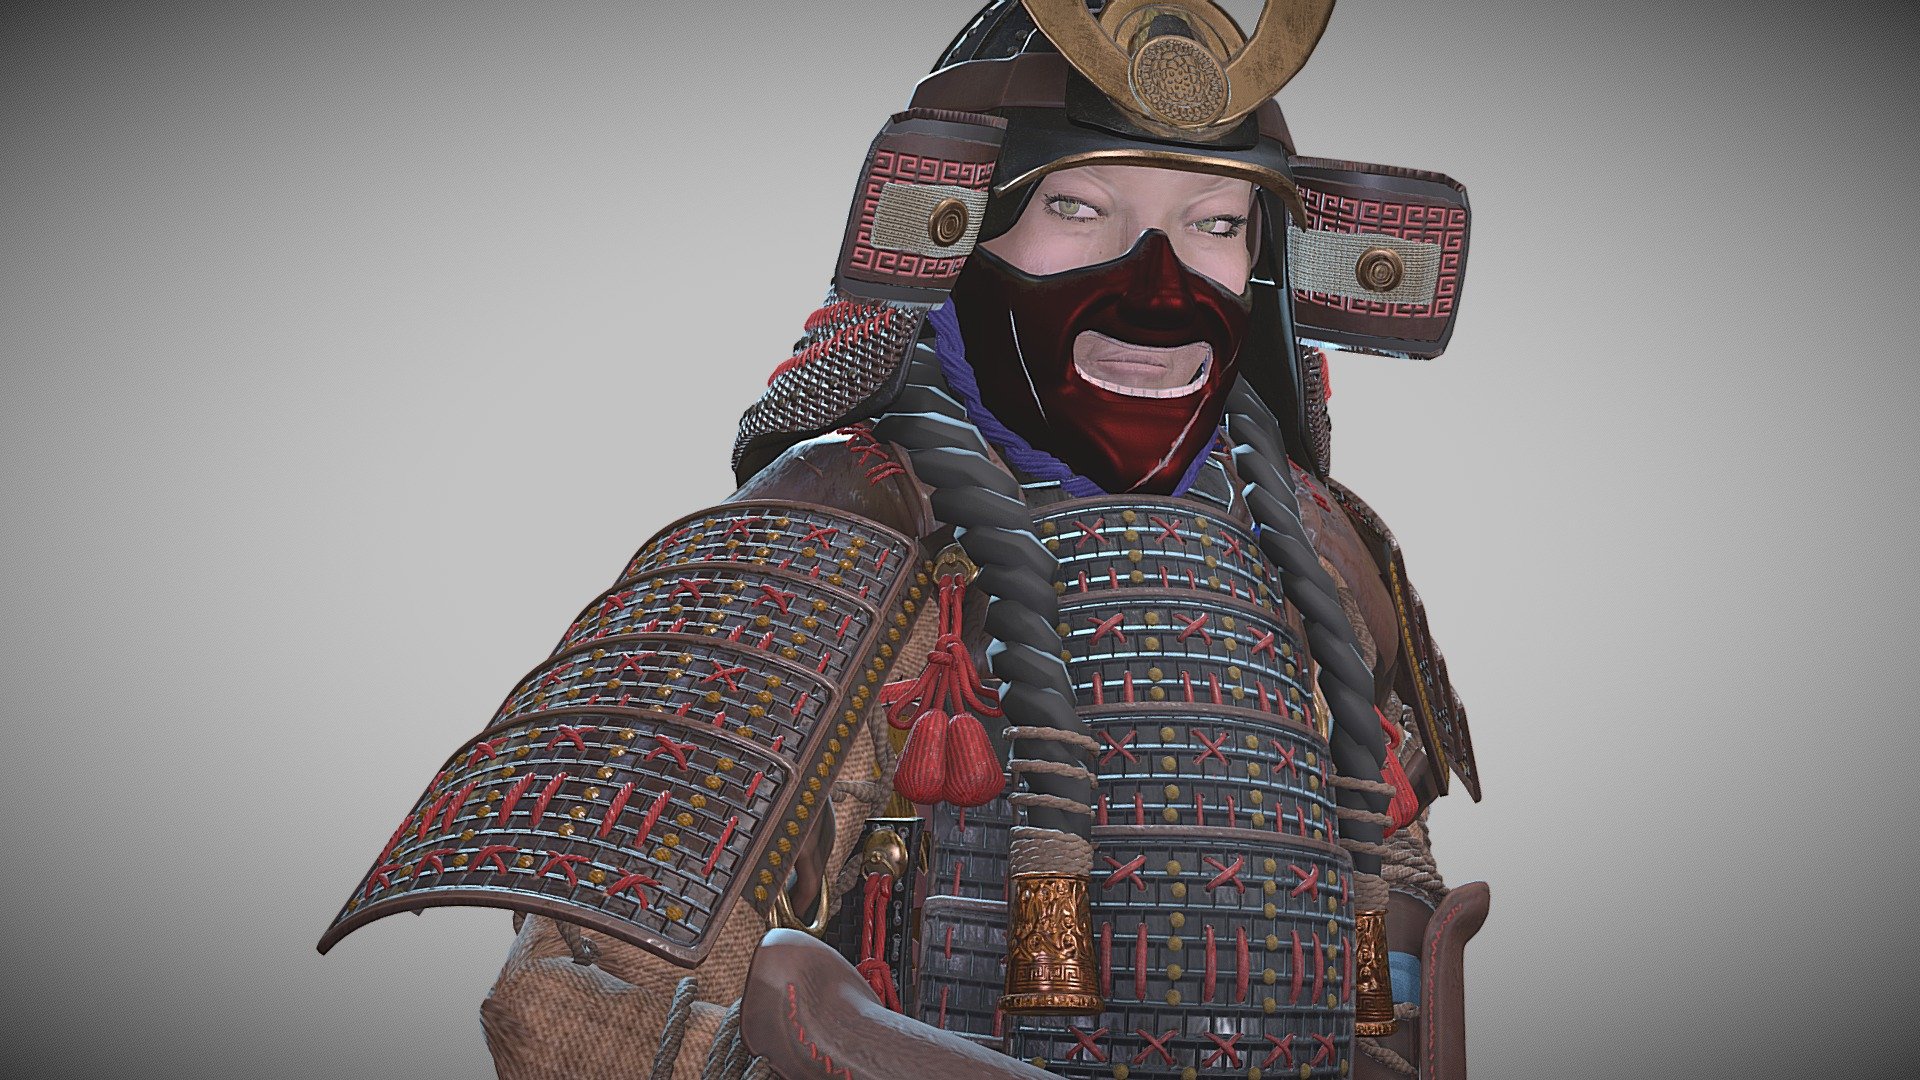 Samurai Tomoe Gozen